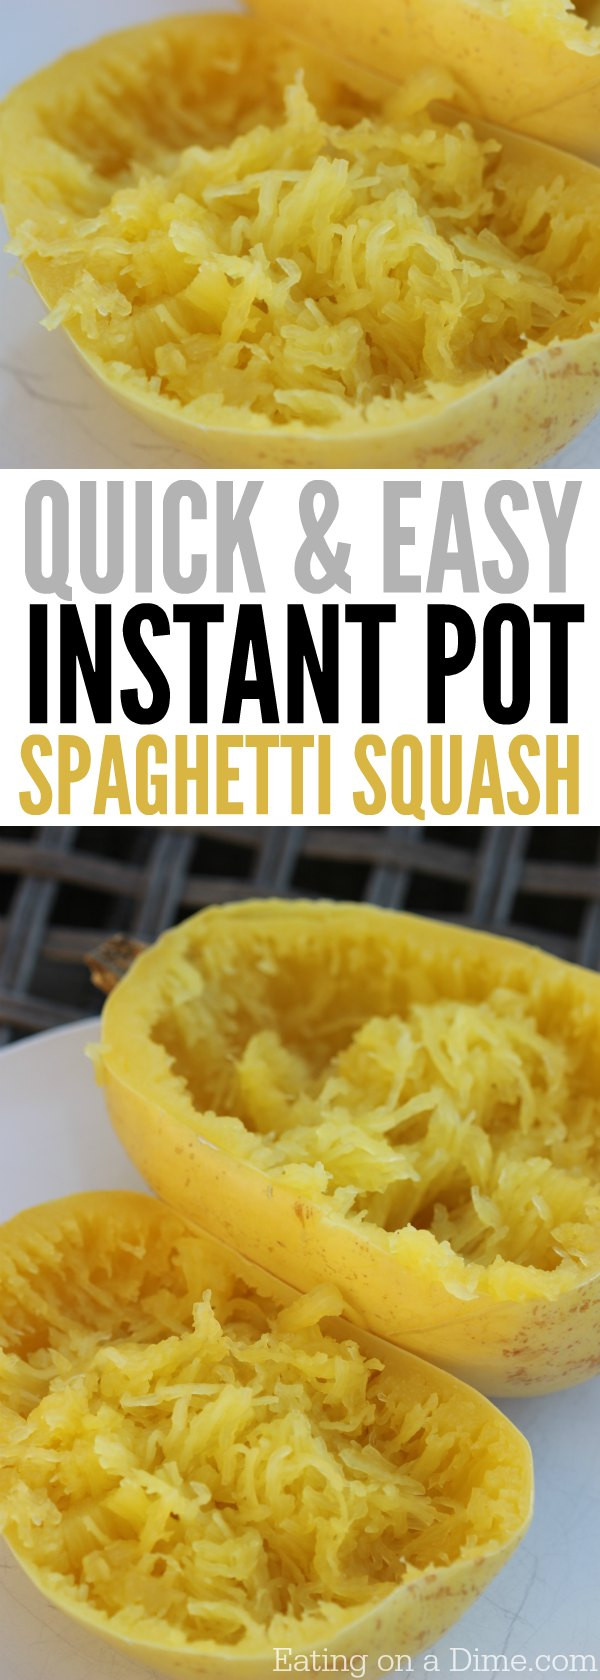 Spaghetti Squash In The Instant Pot
 Quick and Easy Instant Pot Spaghetti Squash Recipe